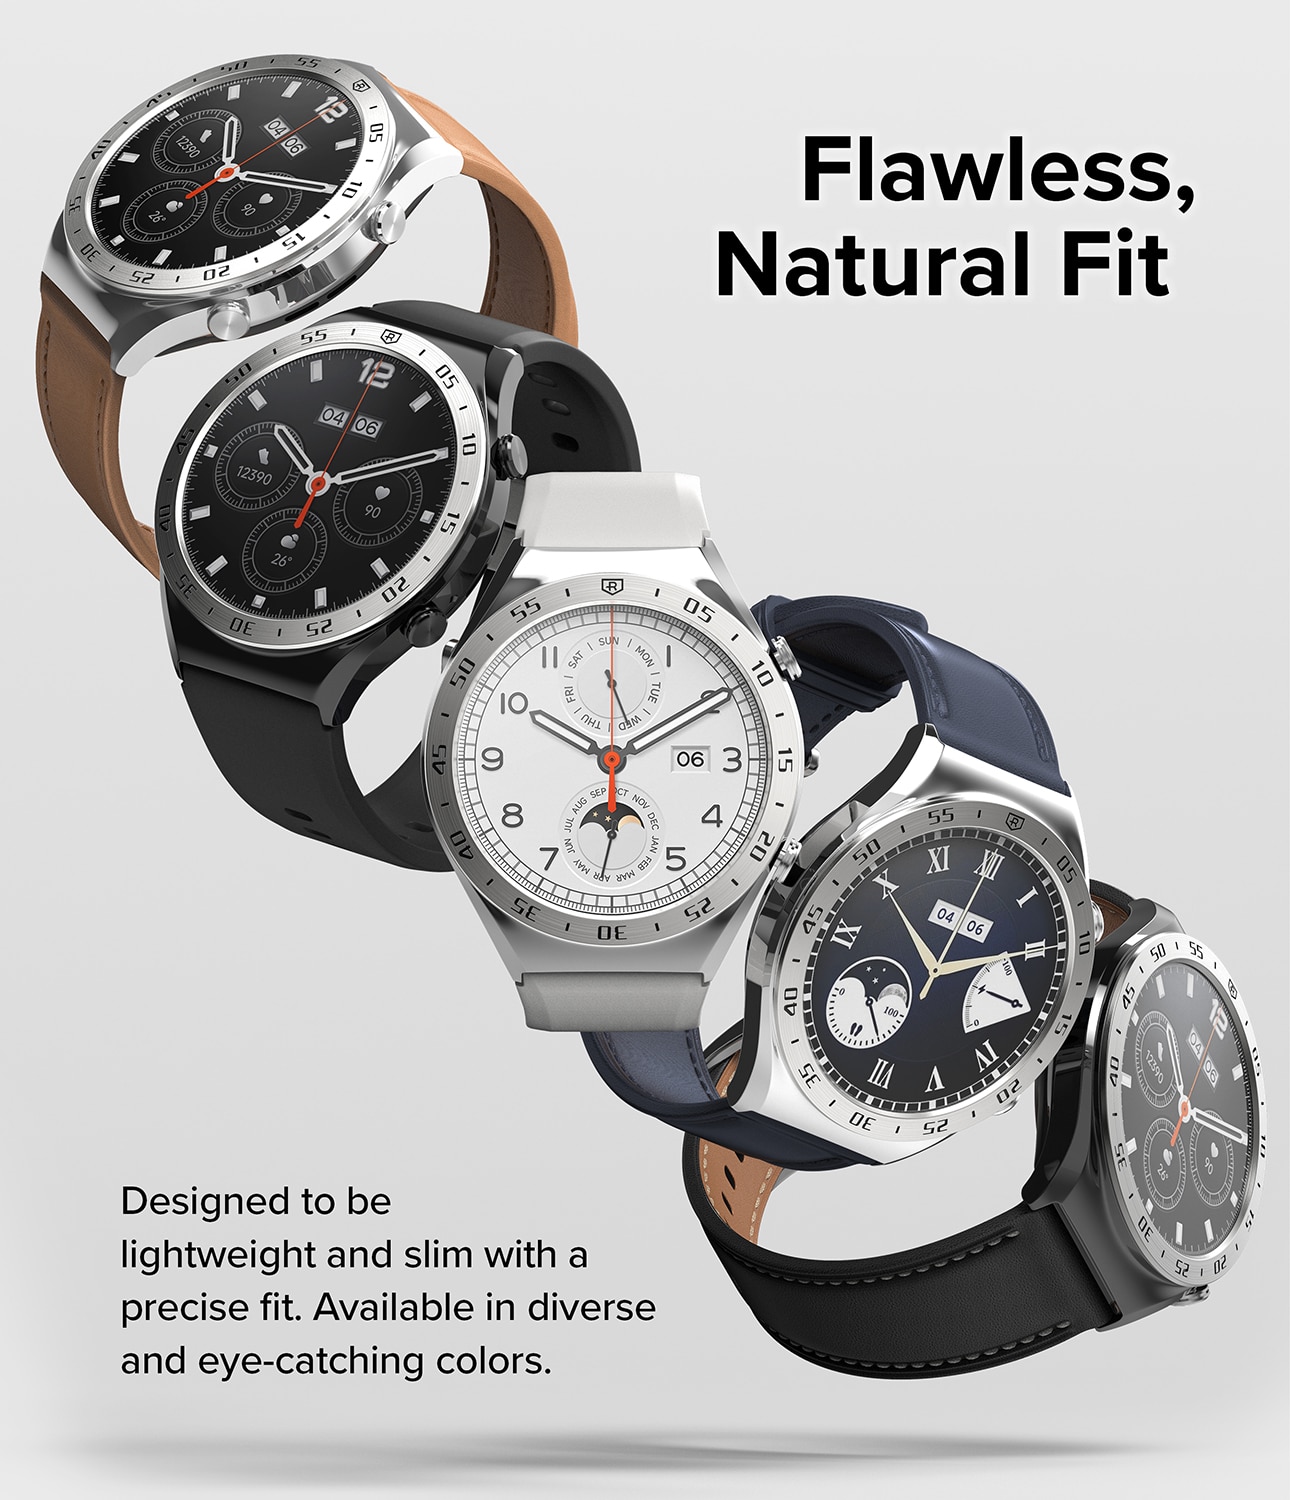 Bezel Styling Xiaomi Watch S1 Silver